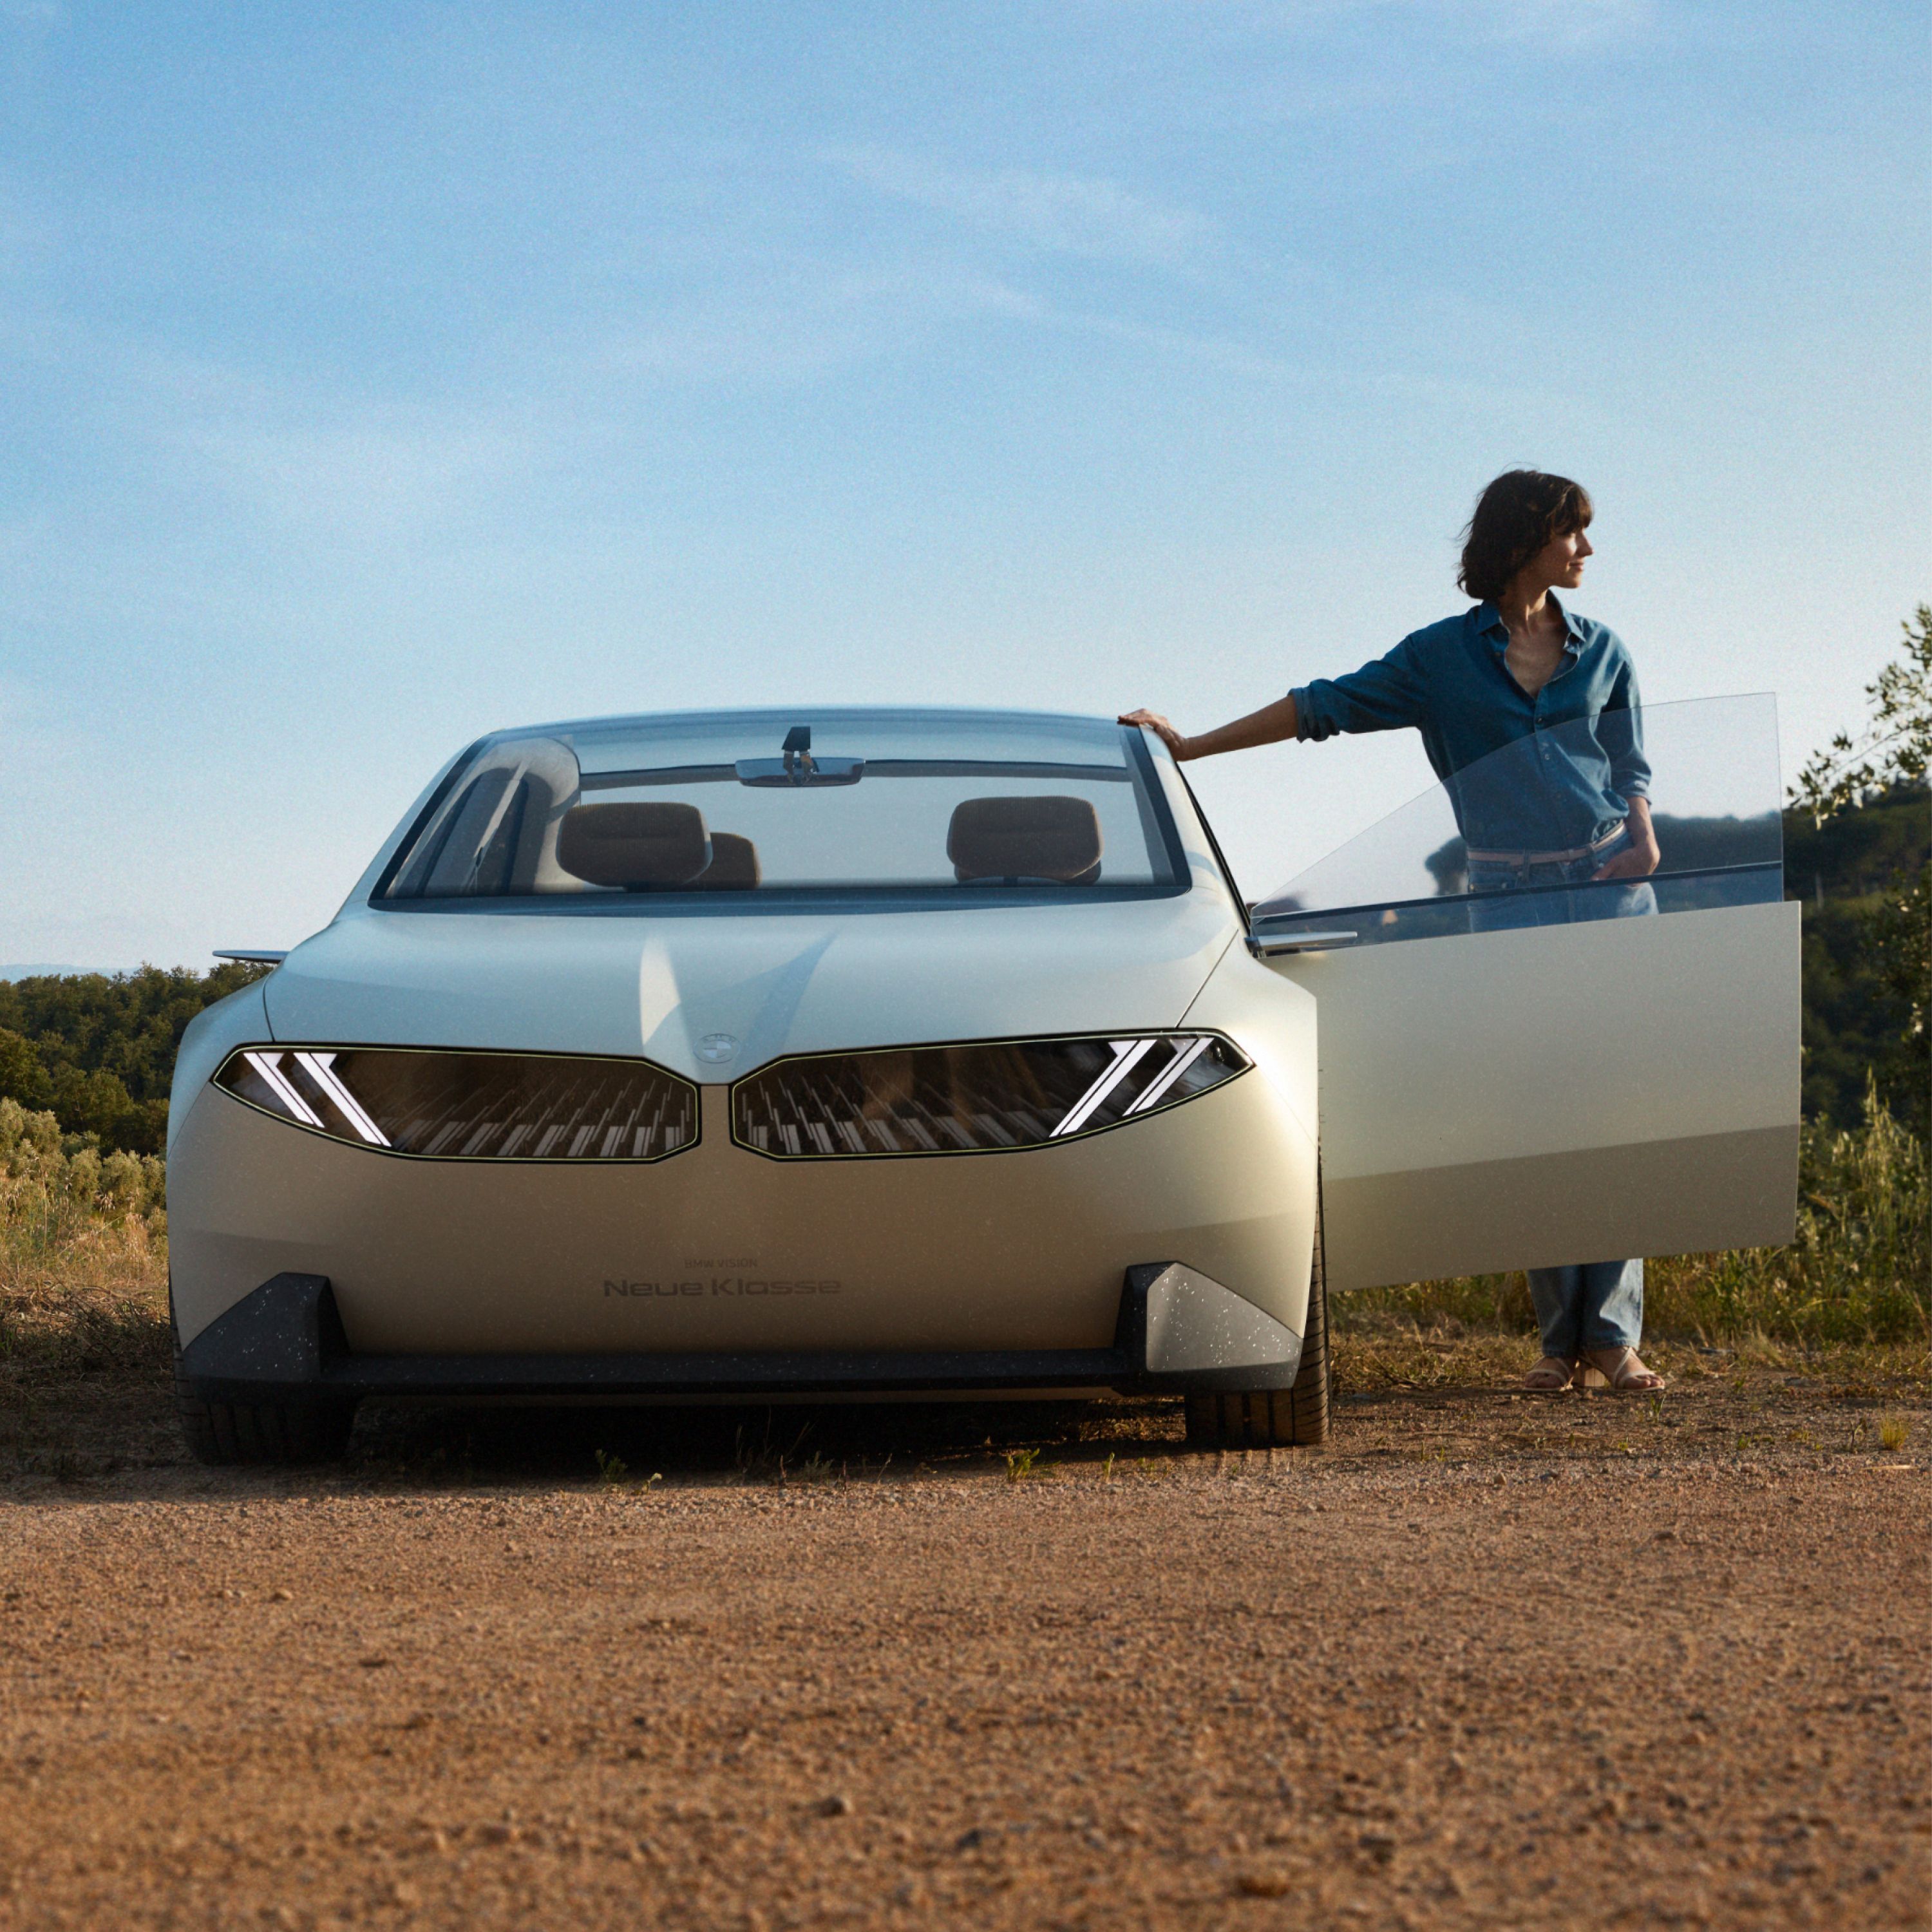 2023 BMW 비전 뉴 클래스 컨셉카, 외부, 전면, 사막에 주차, 도어 열림, 여성 모델